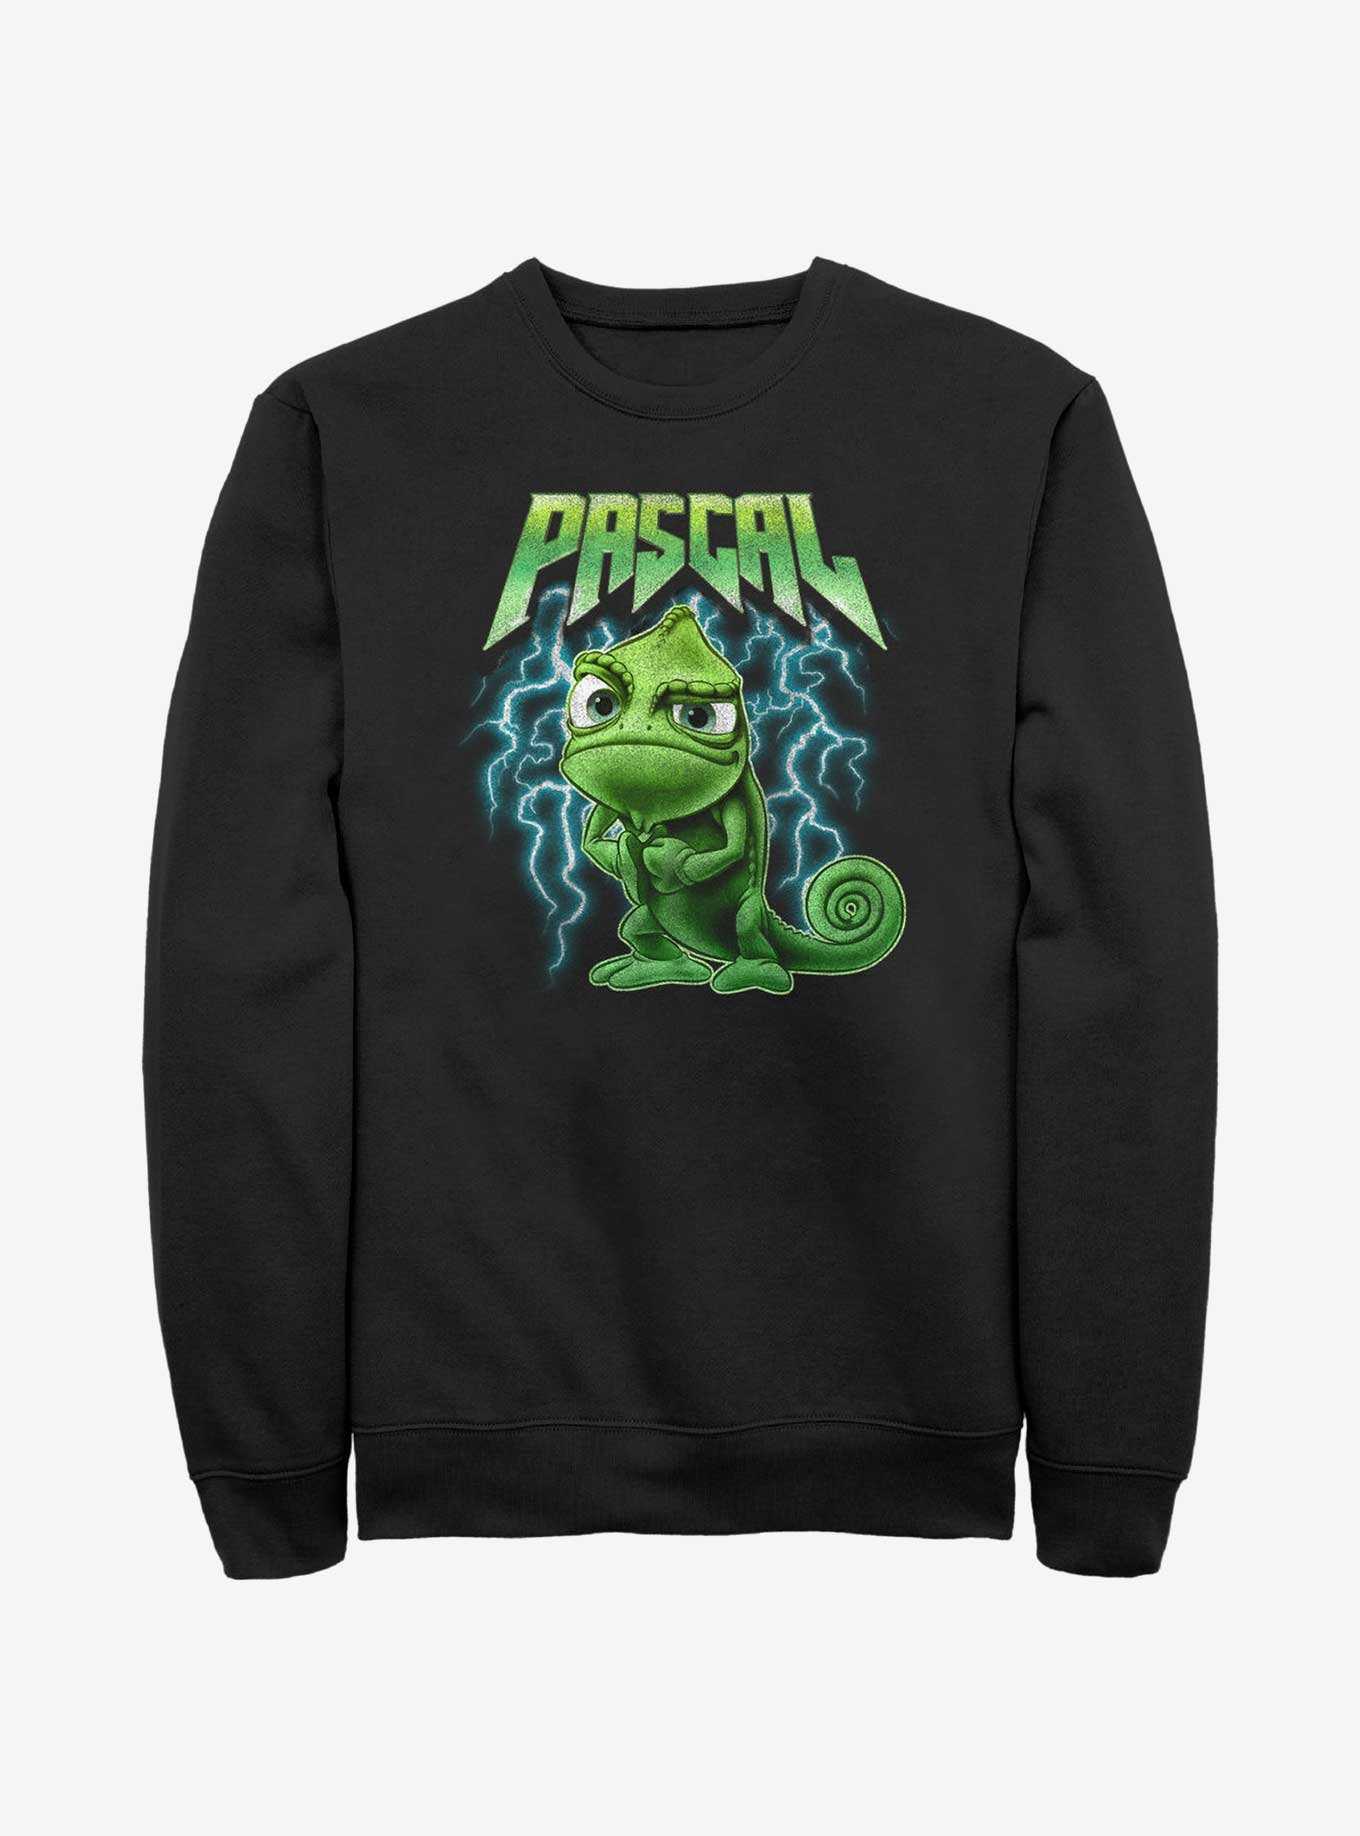 Disney Tangled Pascal Metal Sweatshirt, , hi-res